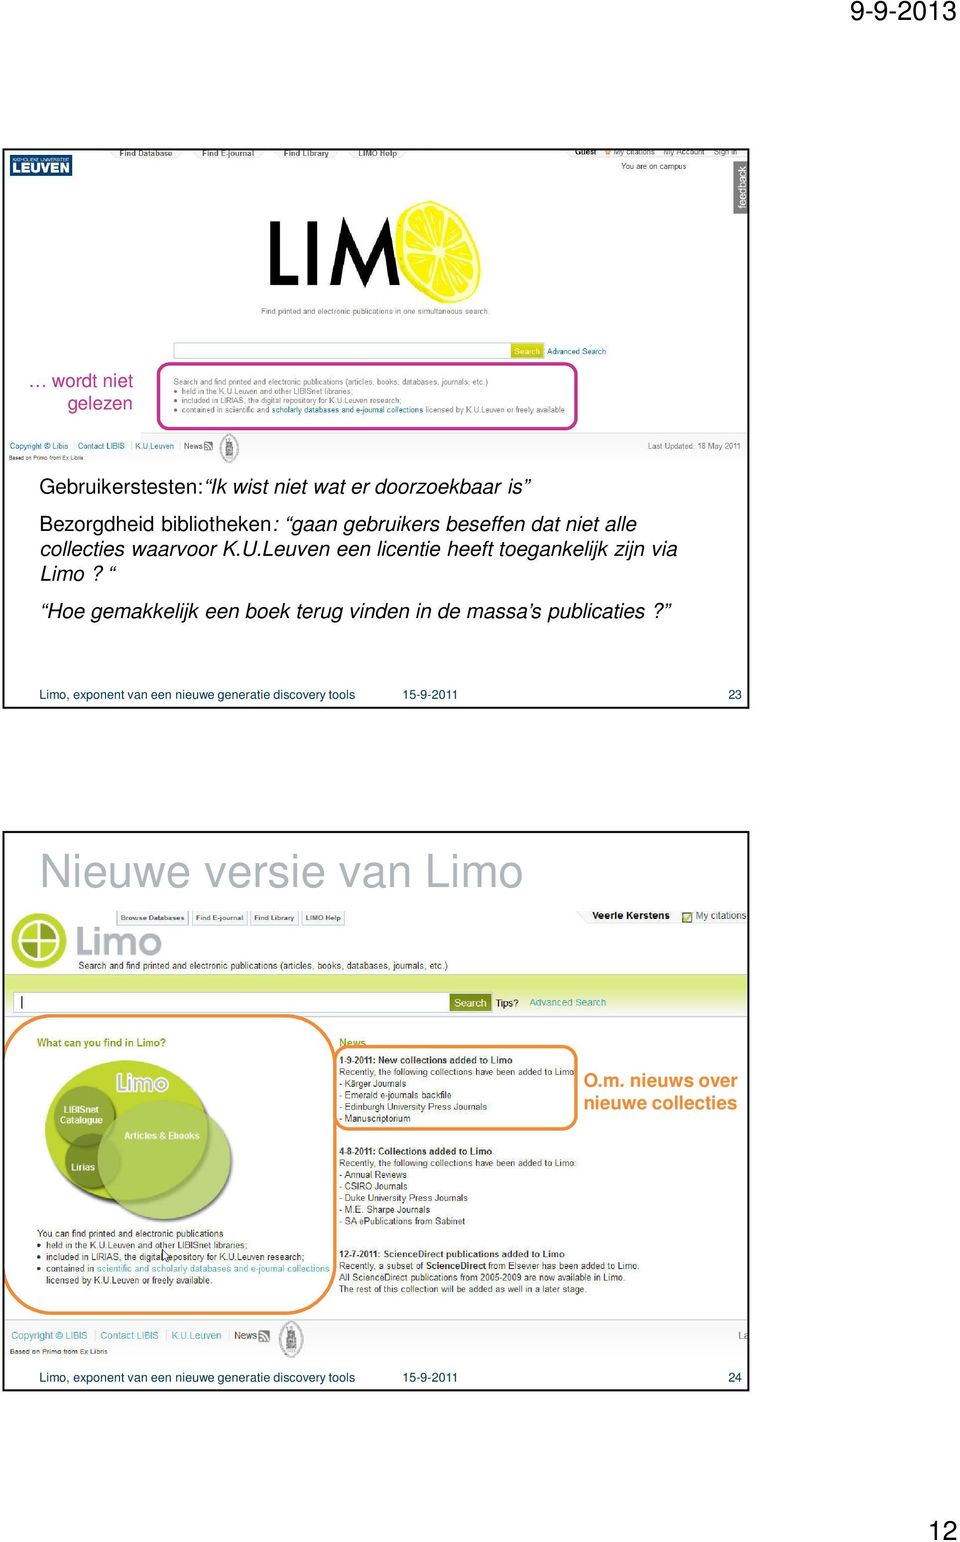 waarvoor K.U.Leuven een licentie heeft toegankelijk zijn via Limo?